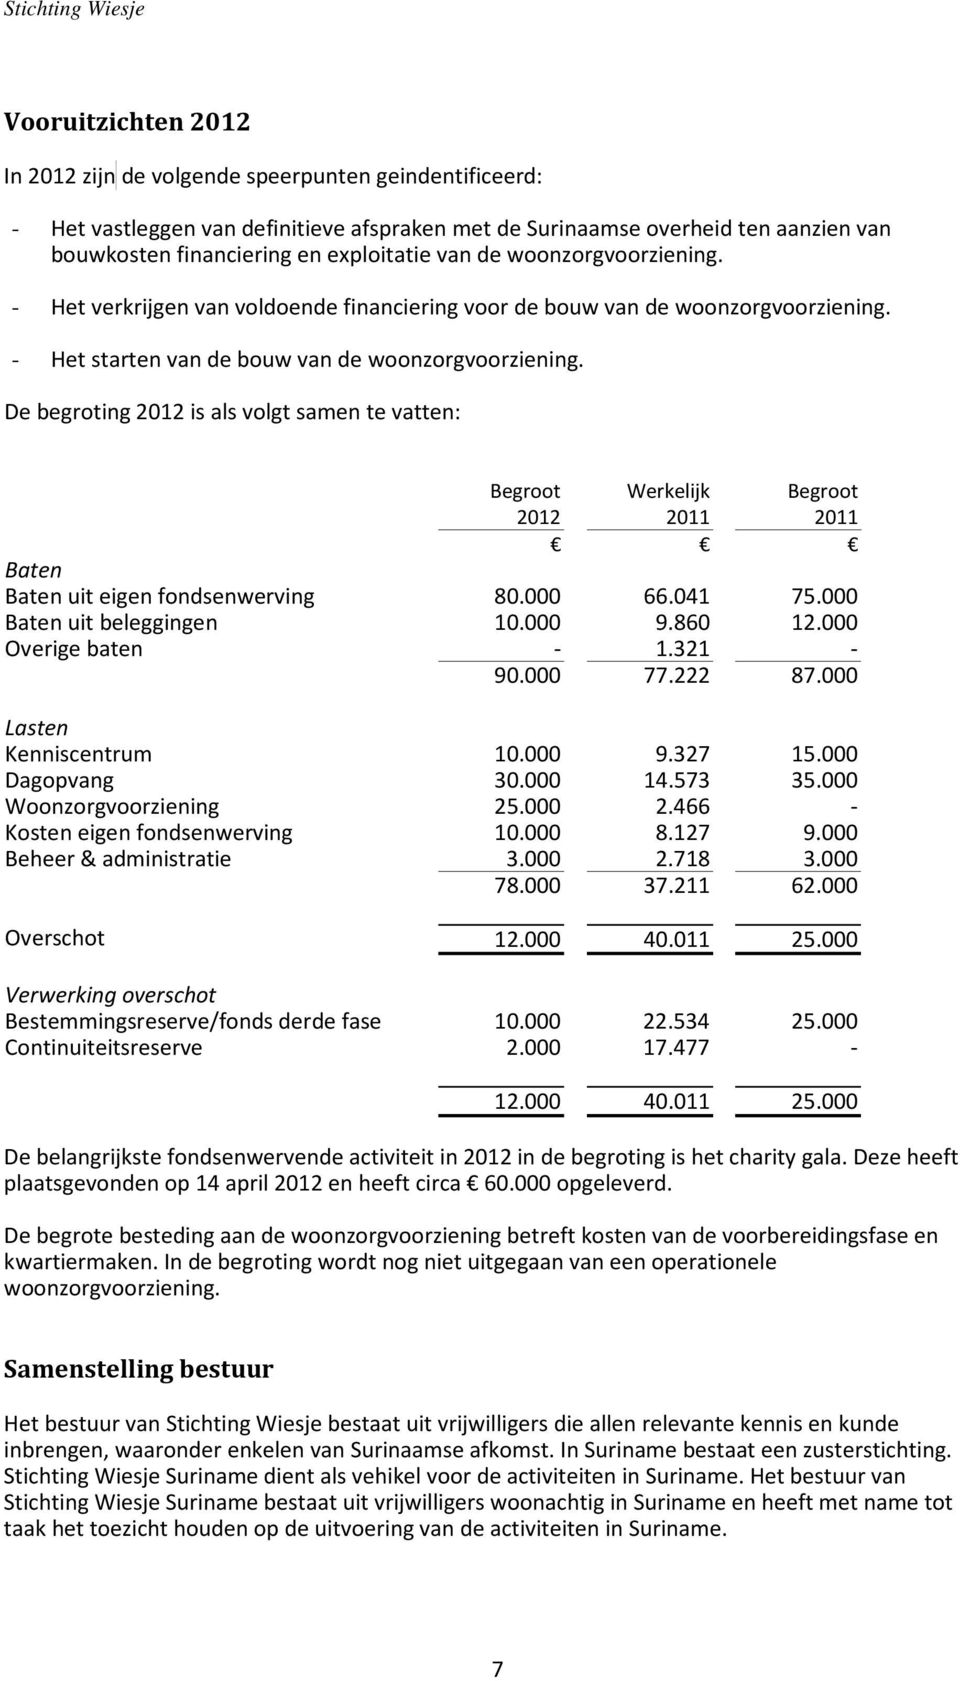 De begroting 2012 is als volgt samen te vatten: Begroot 2012 Werkelijk 2011 Begroot 2011 Baten Baten uit eigen fondsenwerving 80.000 66.041 75.000 Baten uit beleggingen 10.000 9.860 12.